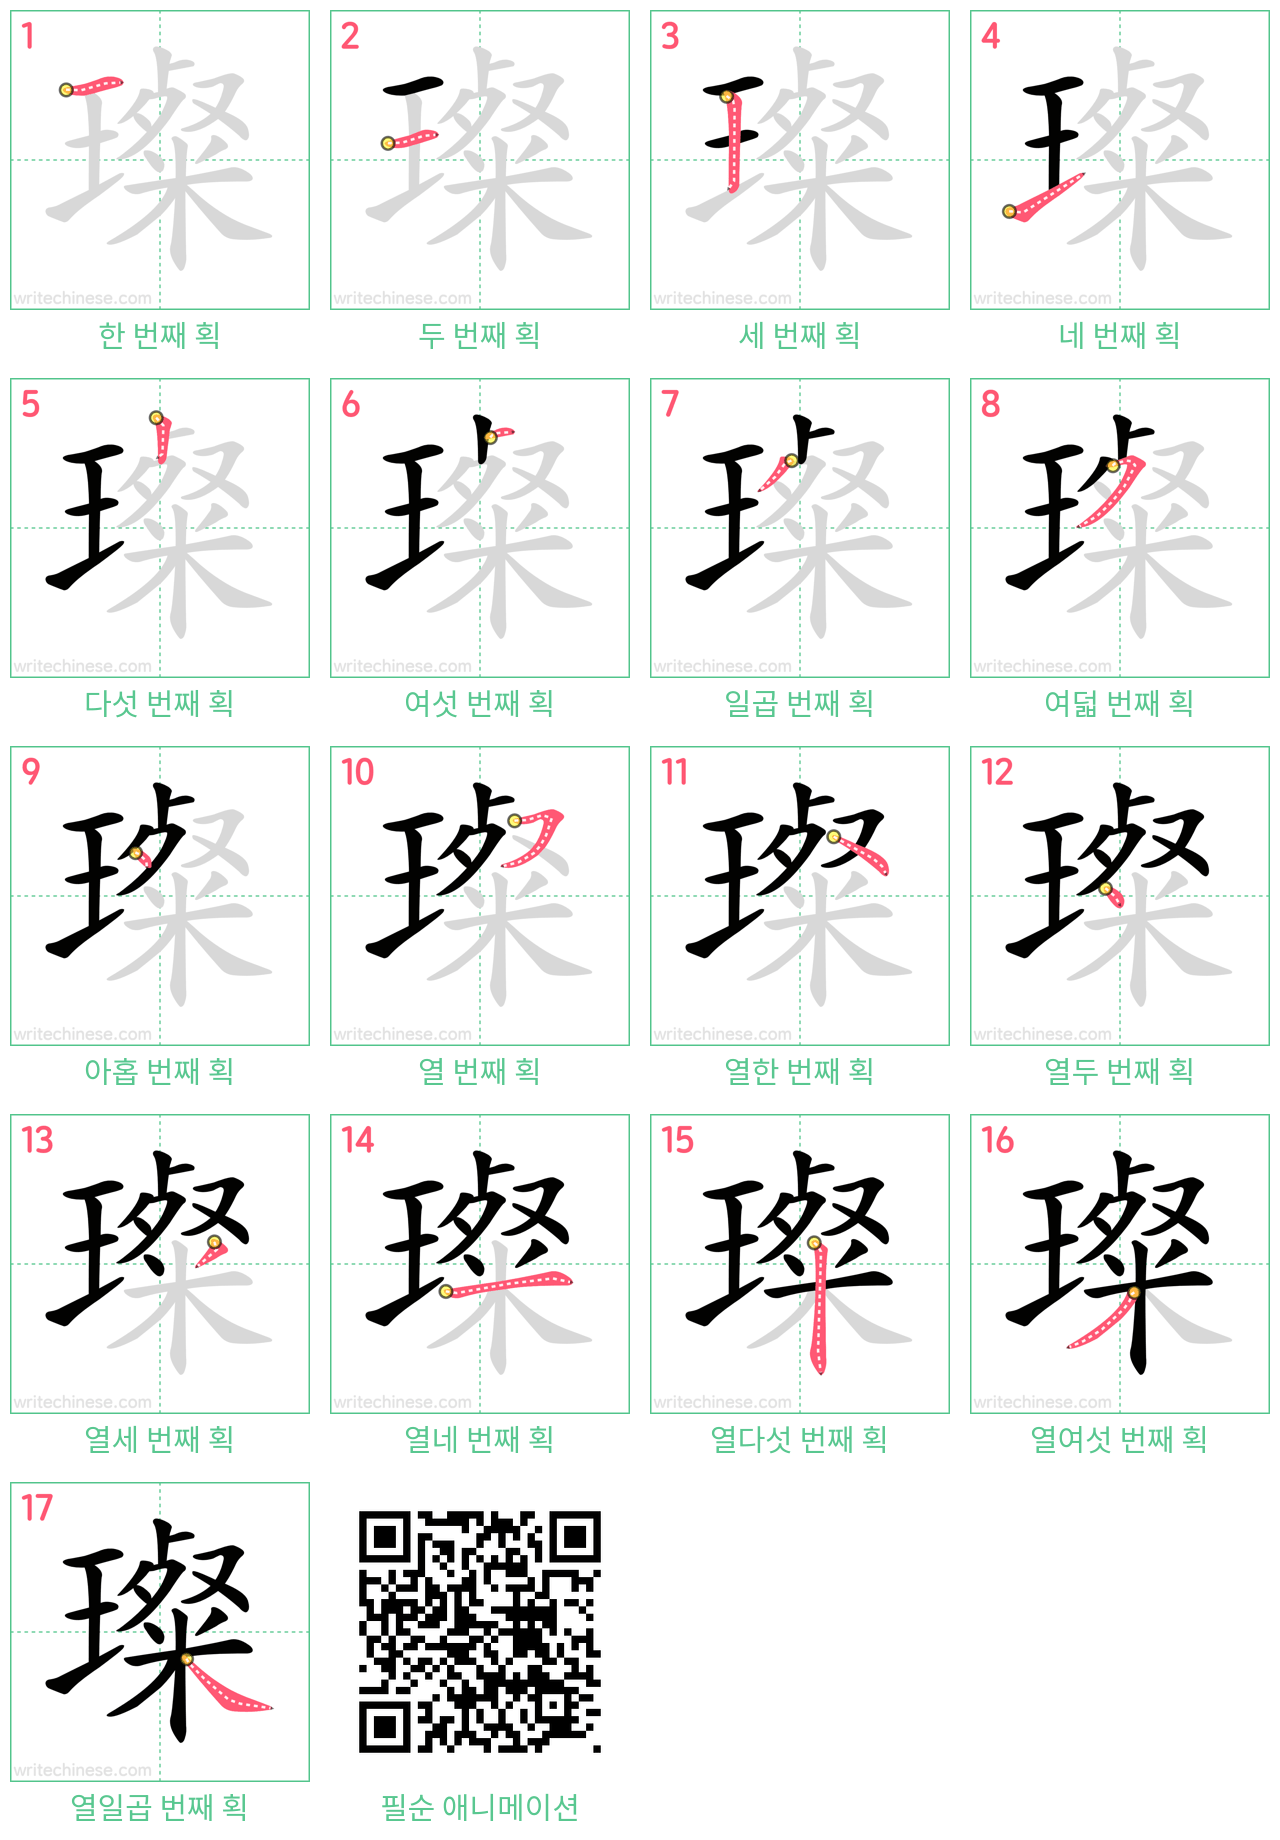 璨 step-by-step stroke order diagrams